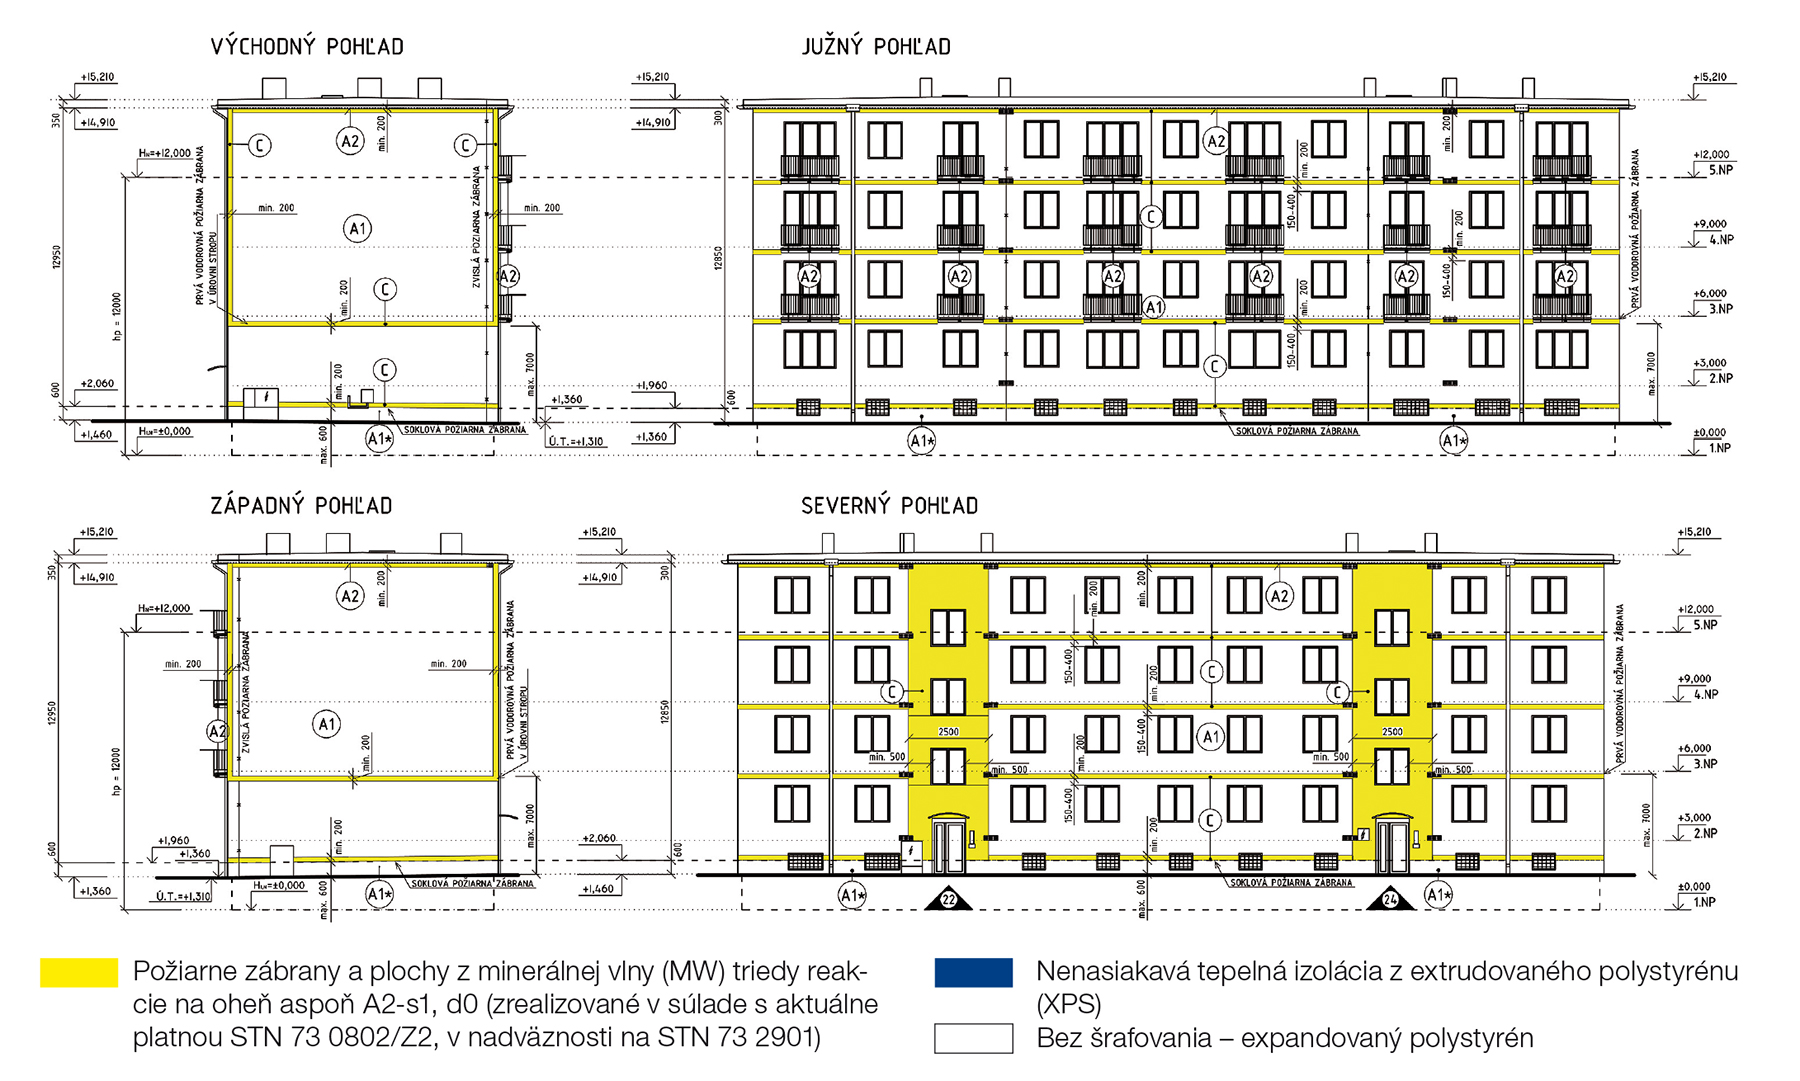 Modelový bytový dom 2 Bytový dom postavený v stavebnej sústave T 03 B, 4 poschodia, 2 vchody. Plocha zateplenia obvodového plášťa: 1 220 m2. Hrúbka izolácie EPS, MW, požiarne zábrany (PZ) z MW: 180 mm.